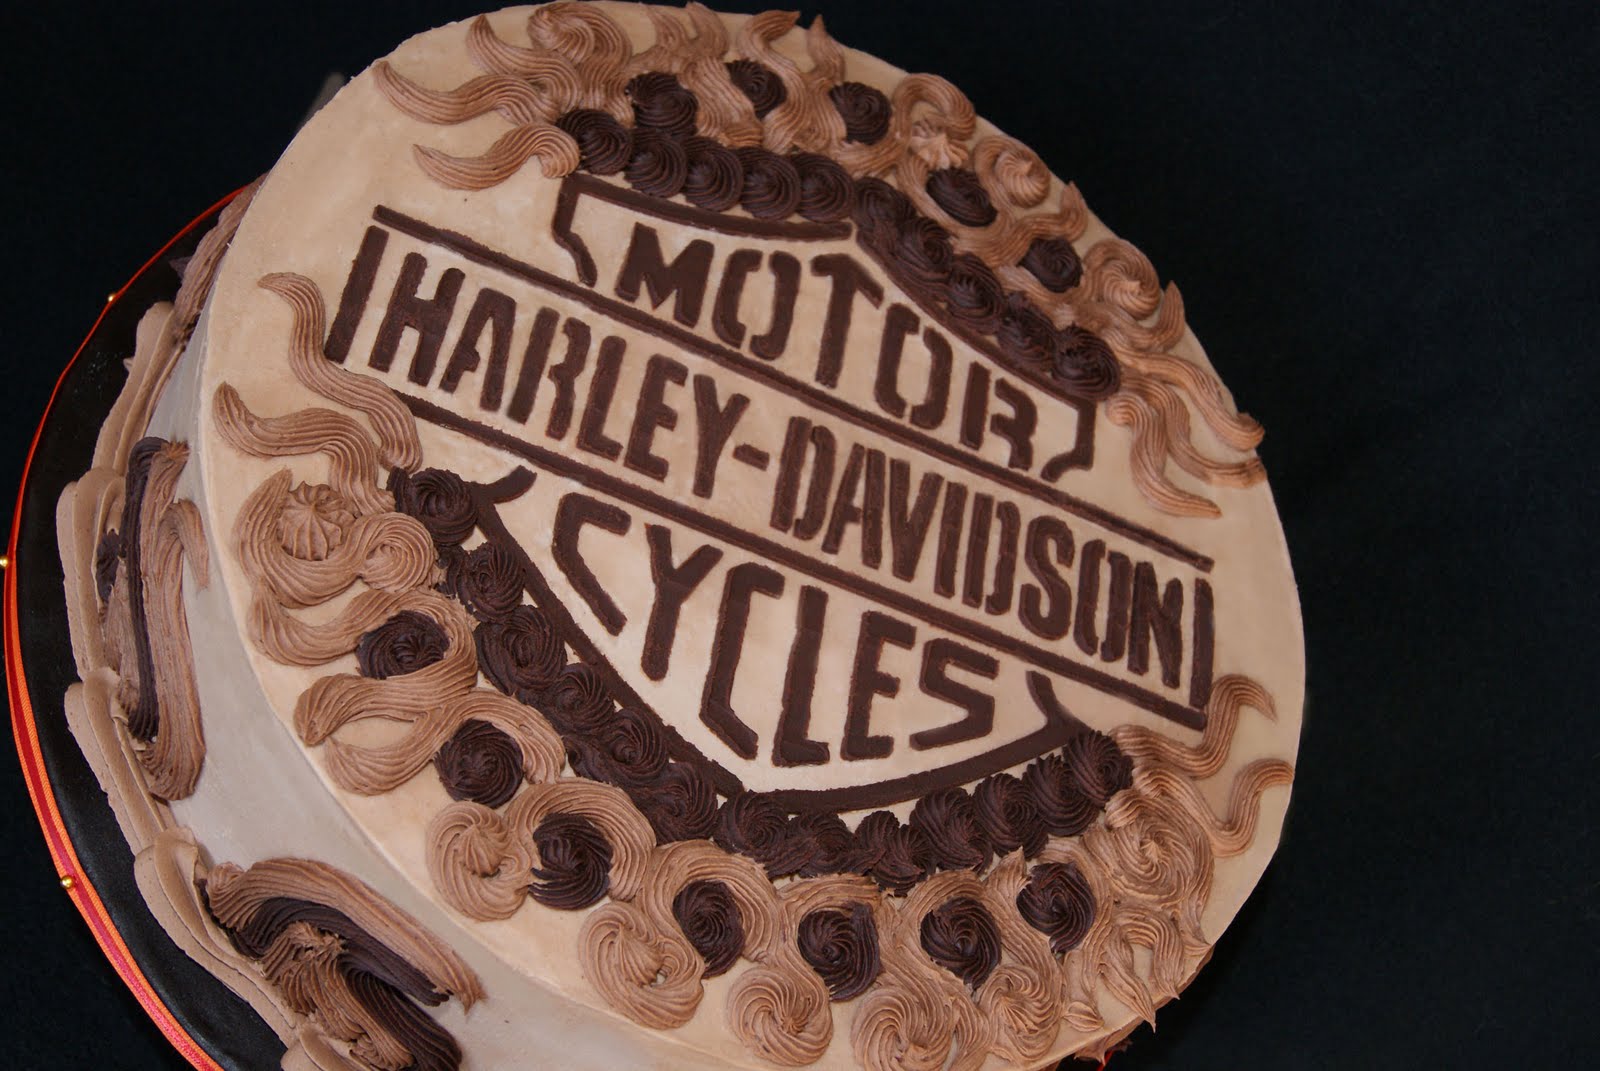 Harley+grooms+cake+2.jpg